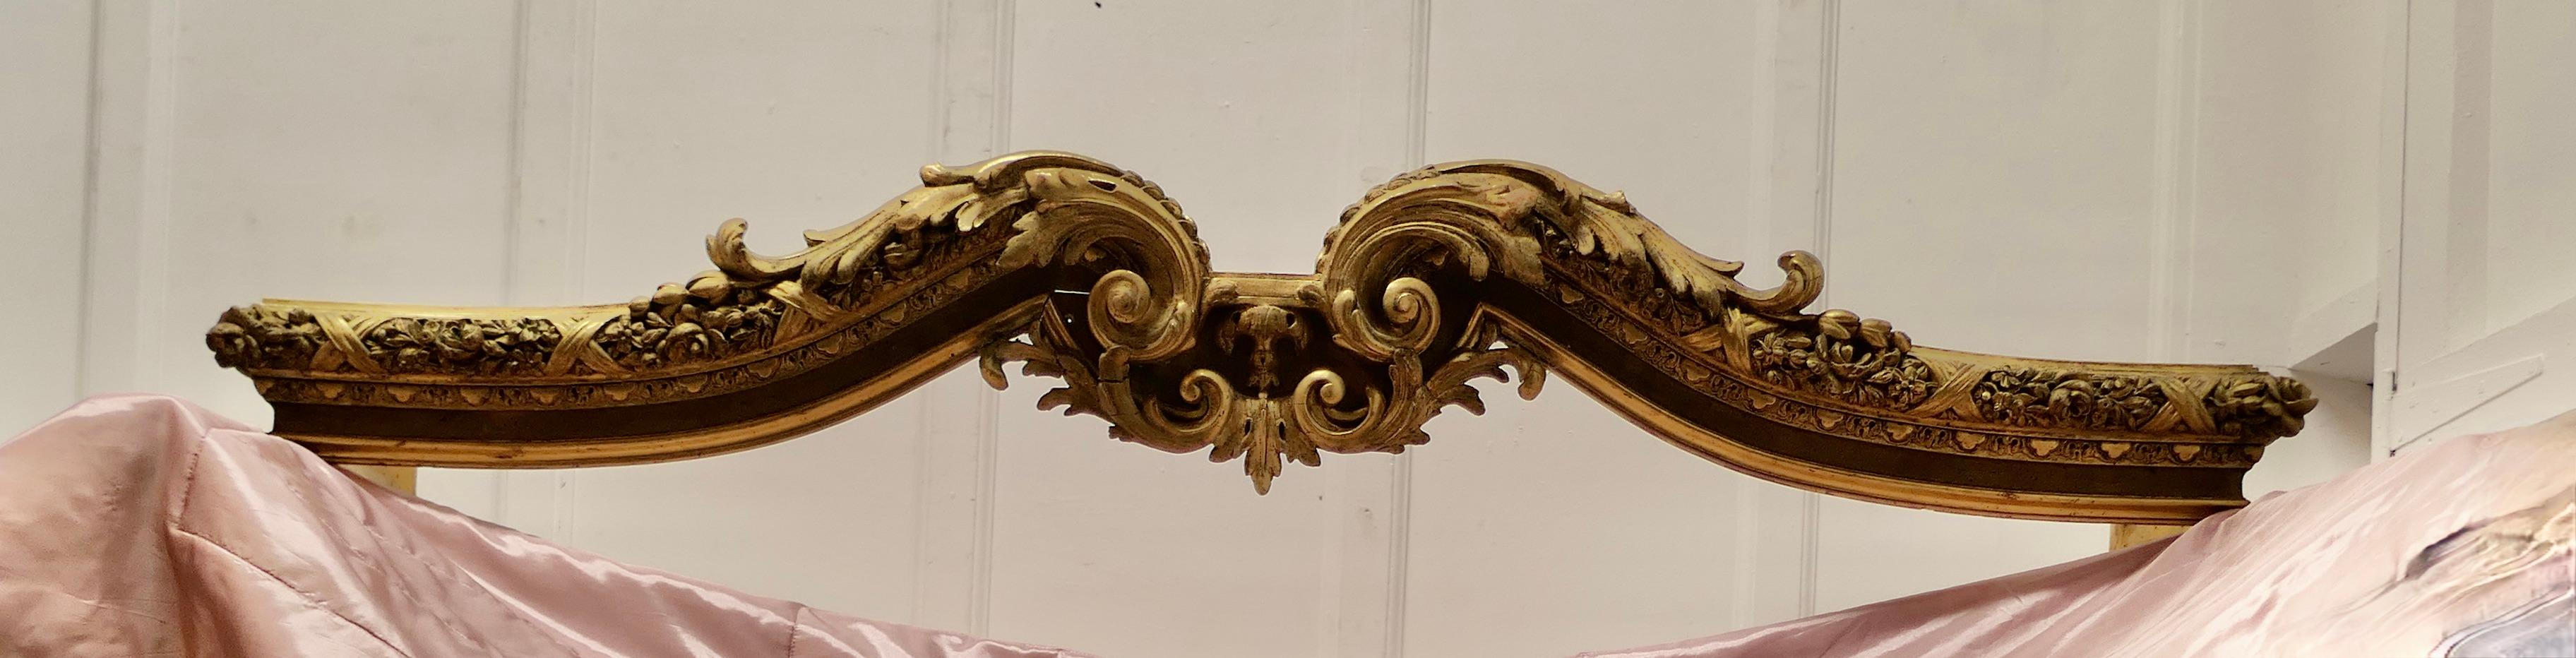 Rococo 19th Century Giltwood Ciel de Lit Bed Canopy Corona